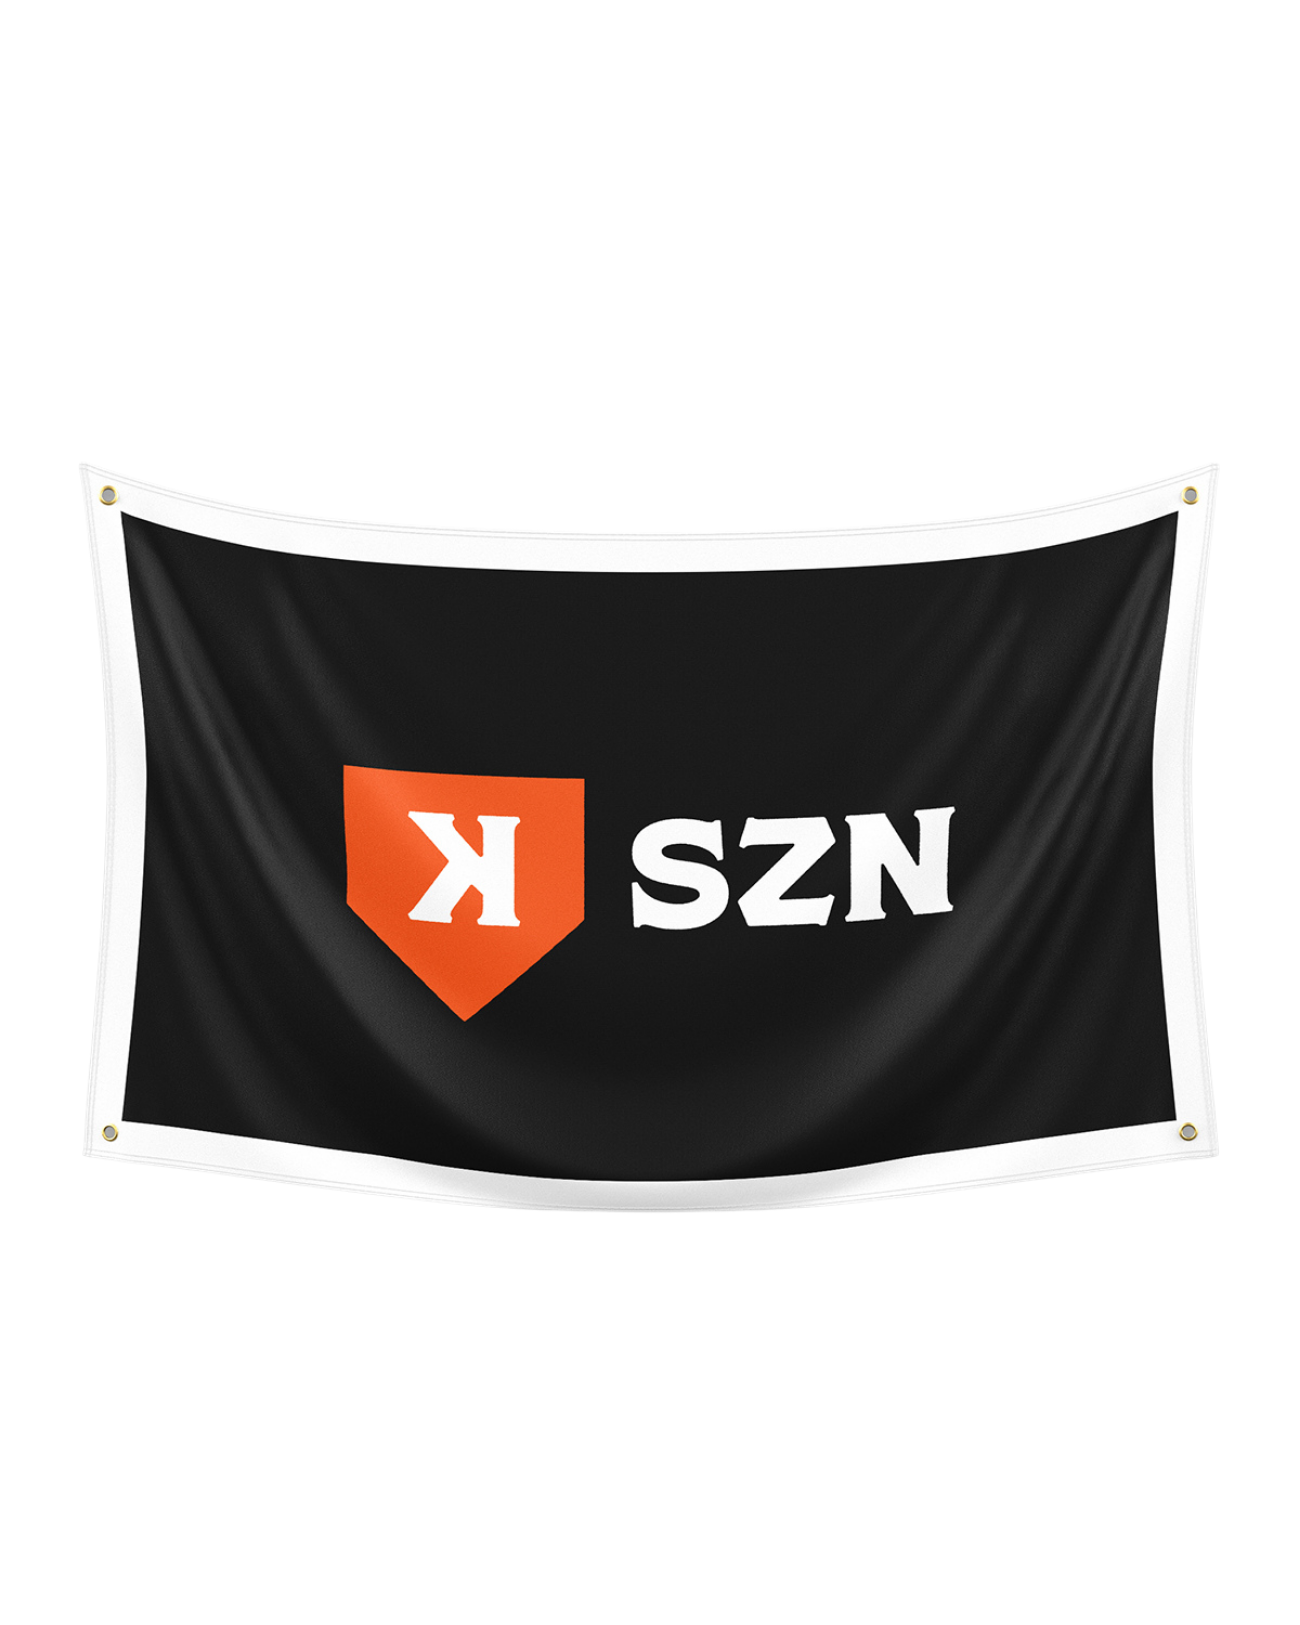 K-SZN Flag